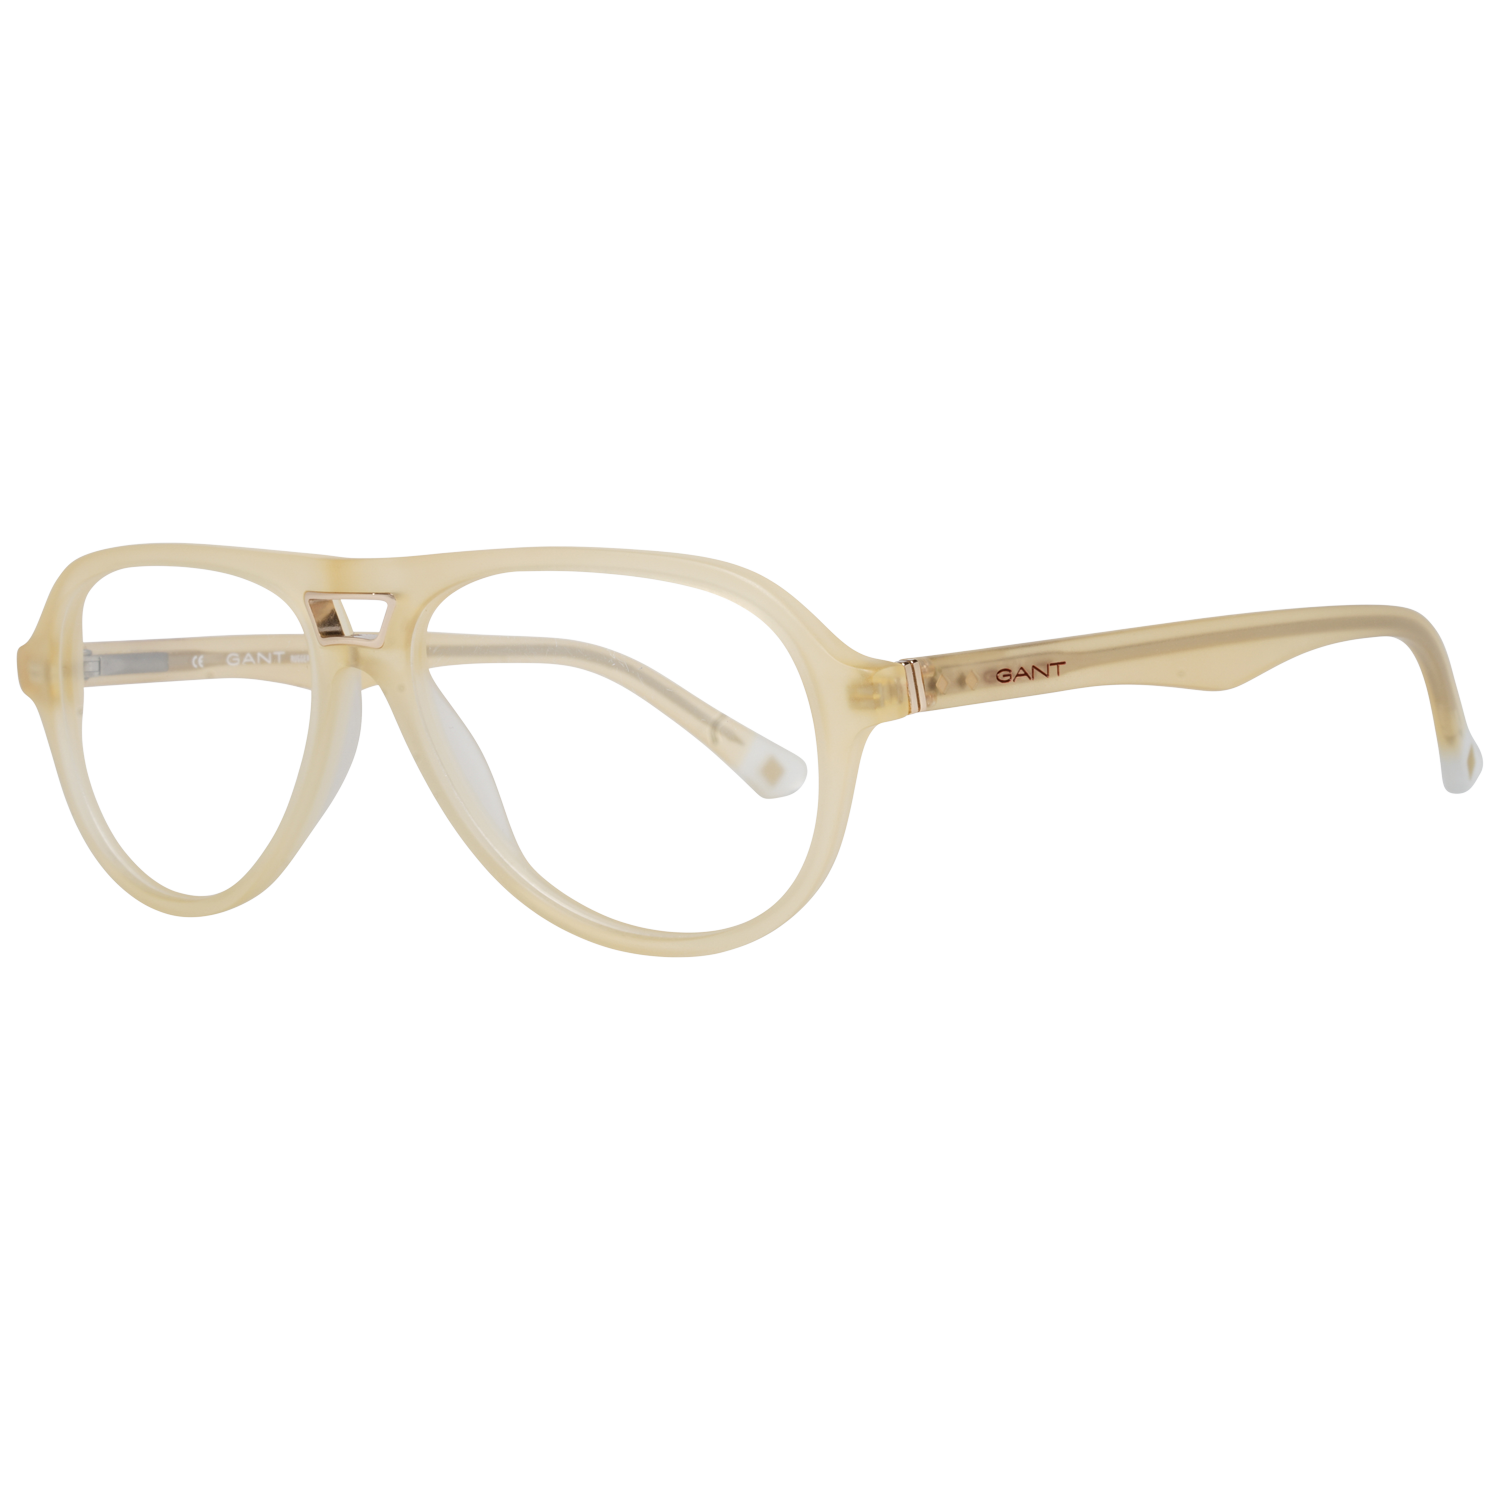 Gant Frames Gant Glasses Frames GRA099 L06 54 | GR 5002 MAMB 54 Eyeglasses Eyewear UK USA Australia 